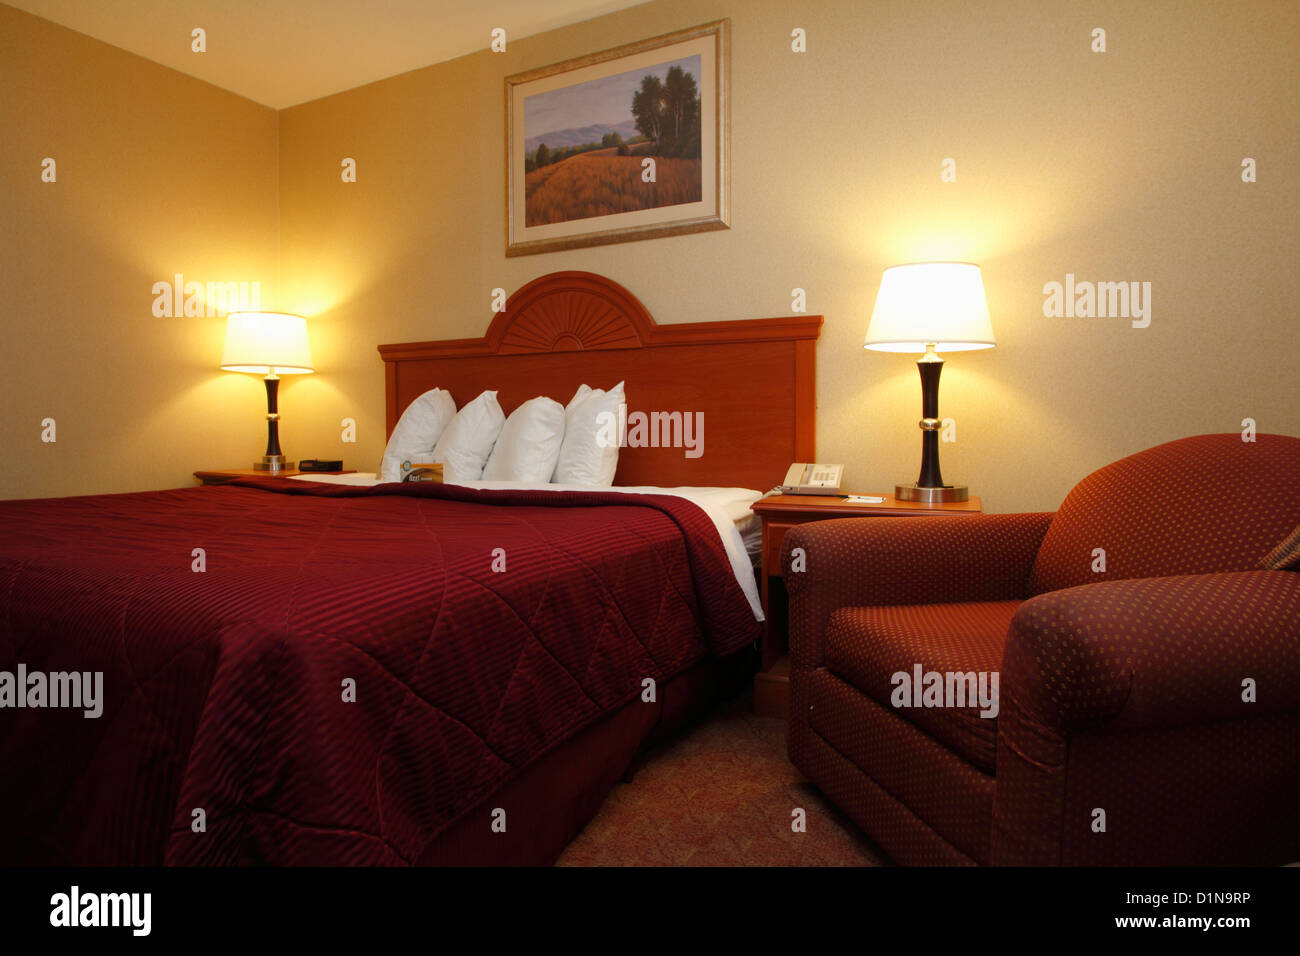 Ein typisches nordamerikanische Hotel oder Motel Zimmer mit Kingsize-Bett und Sessel und Lampen sowie vier Kissen Stockfoto